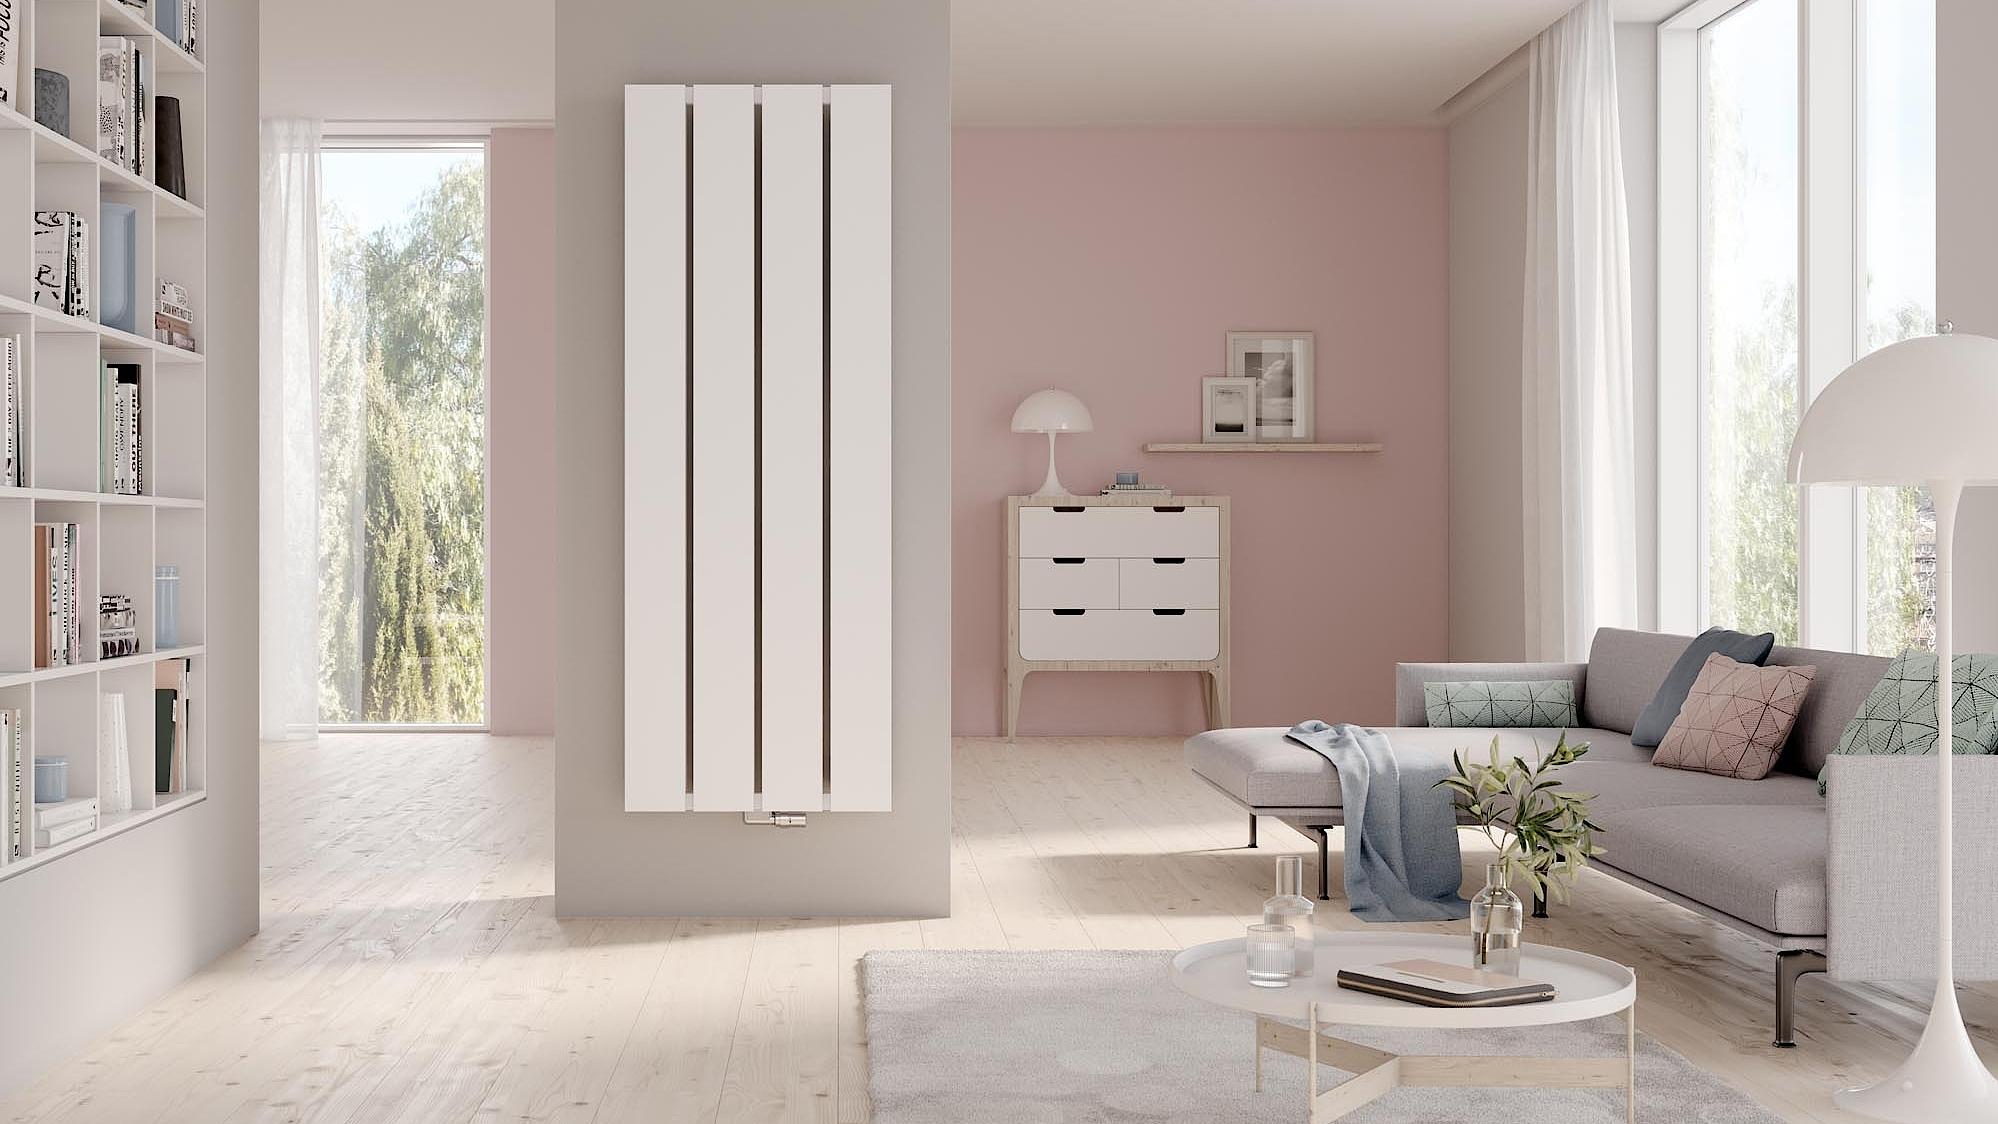 Grzejniki dekoracyjne i łazienkowe Kermi Decor-Arte Plan przekonują nowoczesnym, minimalistycznym wzornictwem.